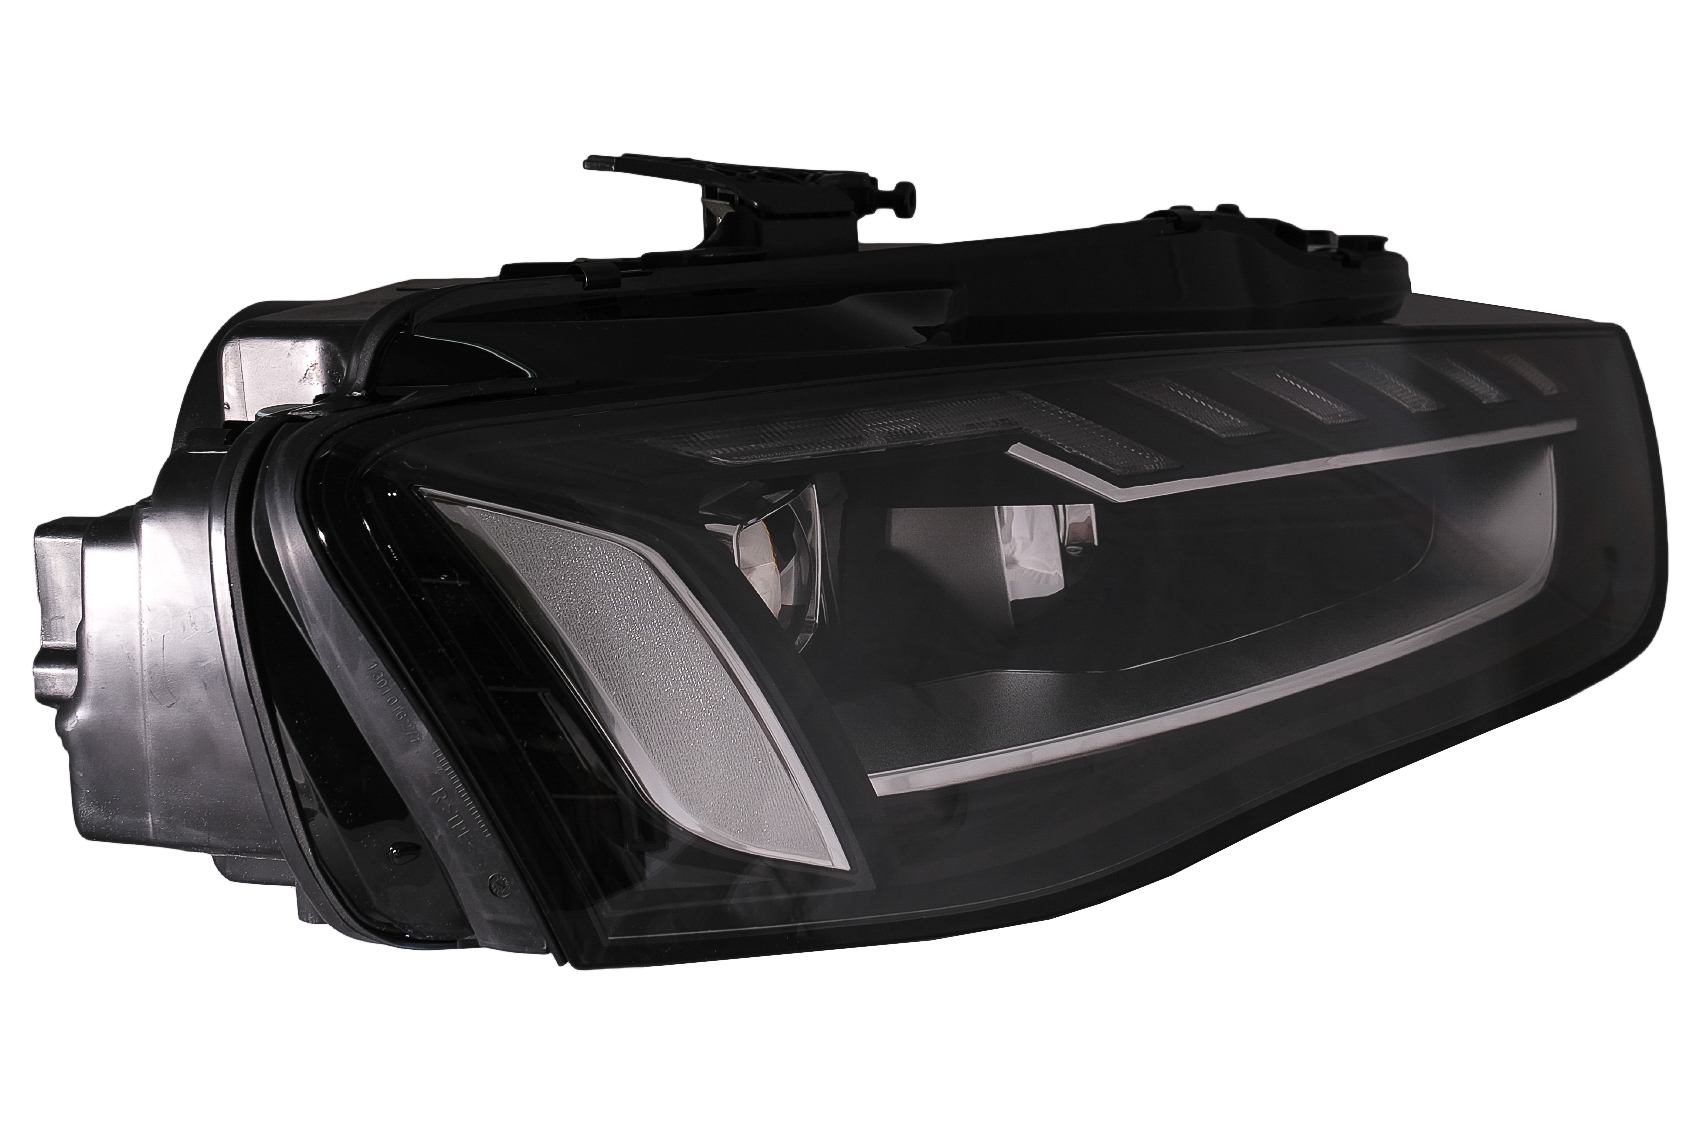 Hochleistungslampen-LED-Kit für die Scheinwerfer des Audi A4 B8 - 5 JAHRE  GARANTIE und Lieferung versandkostenfrei!